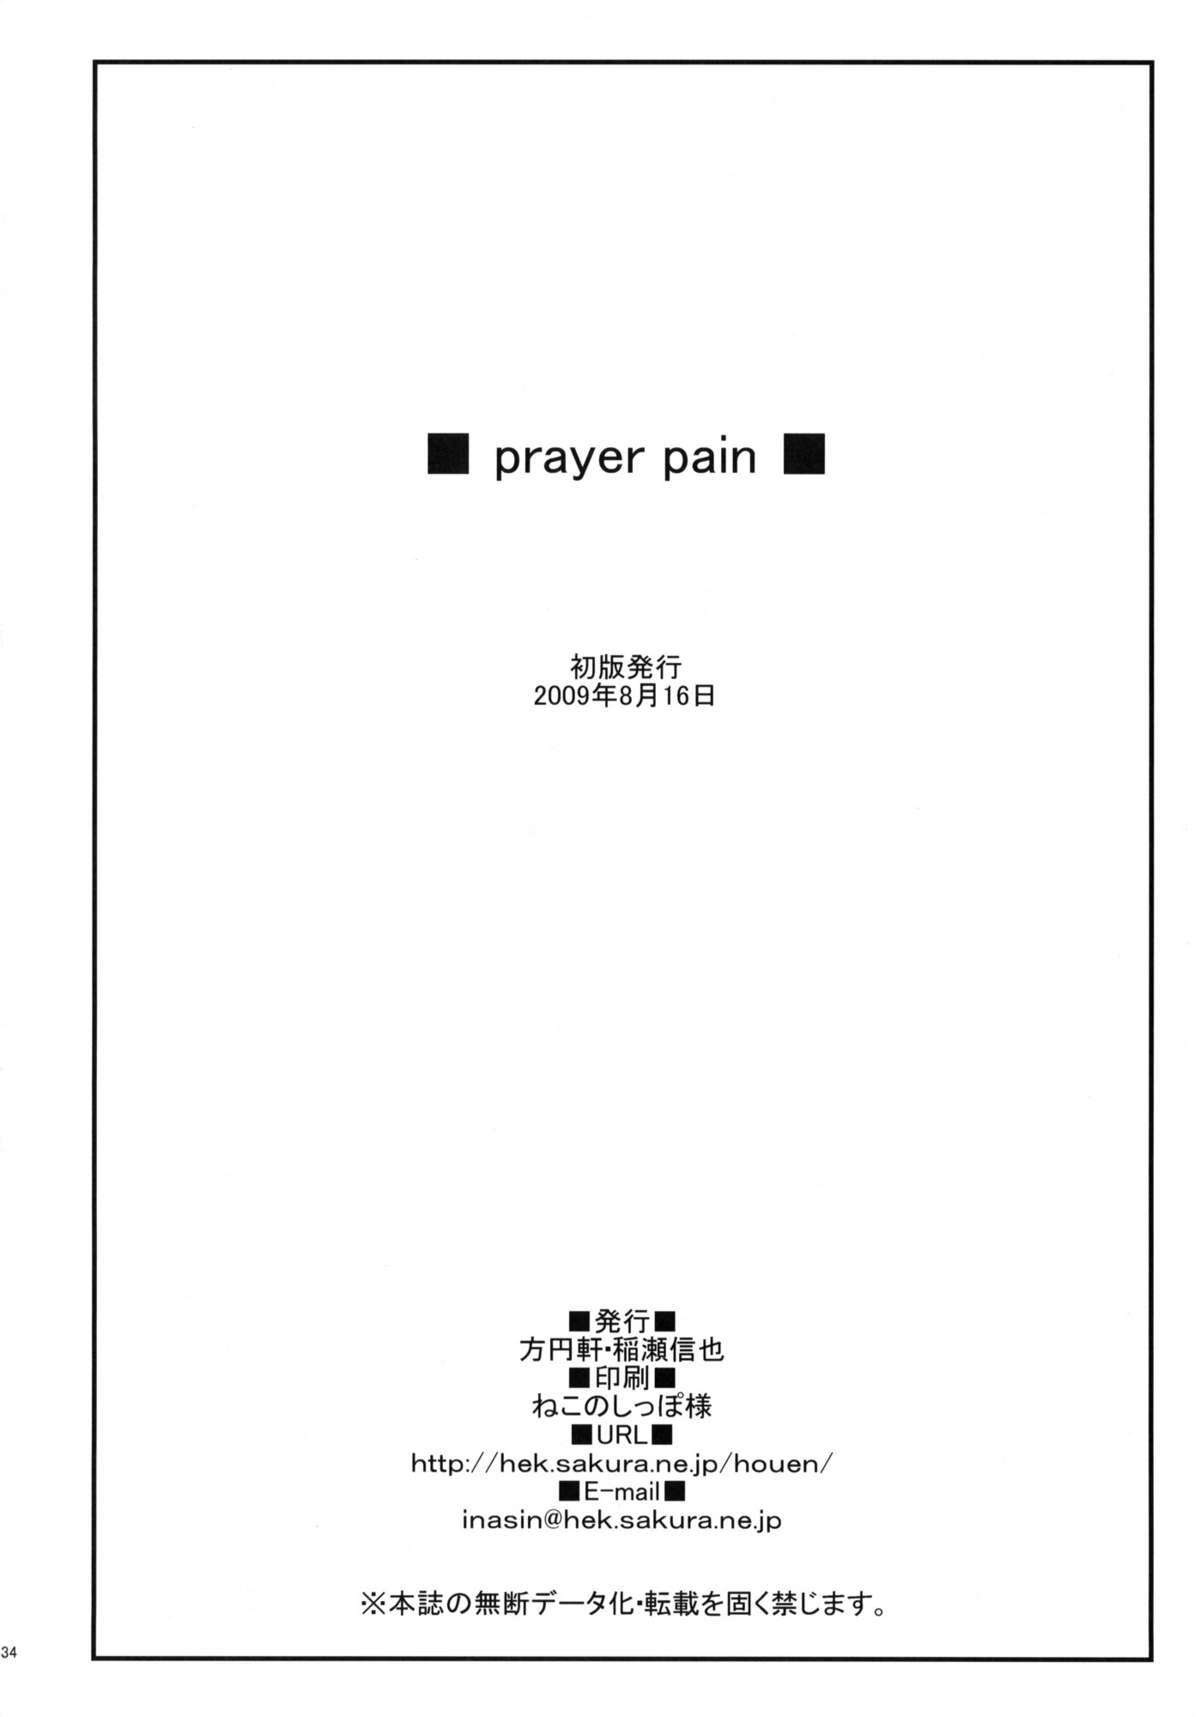 prayer pain 32